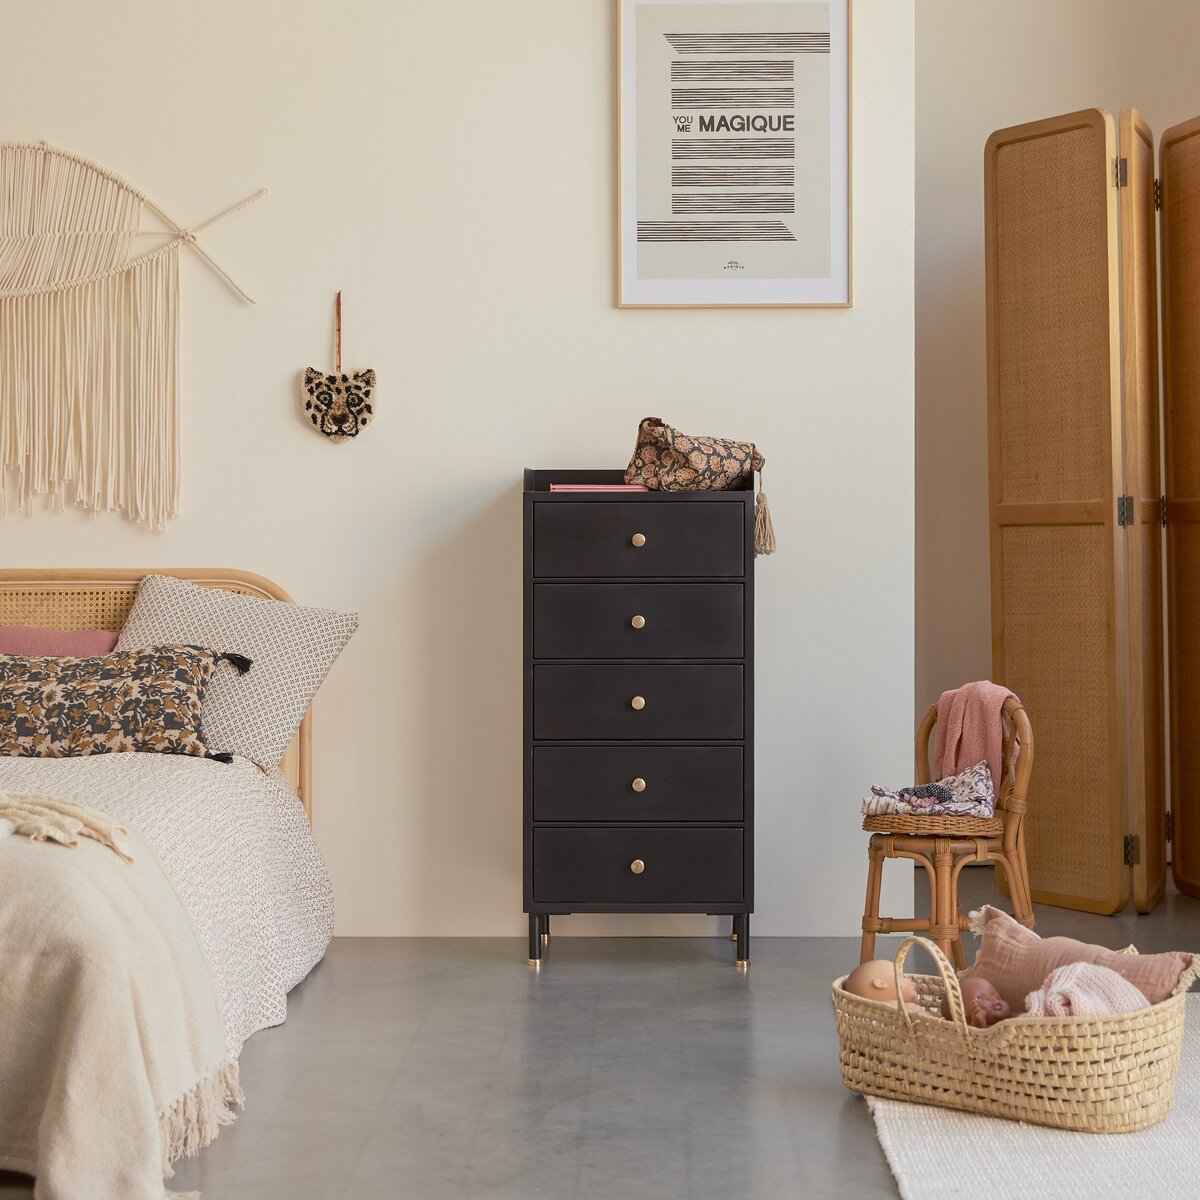 Decoración de cómoda de dormitorio: consejos útiles - Alcon Mobiliario